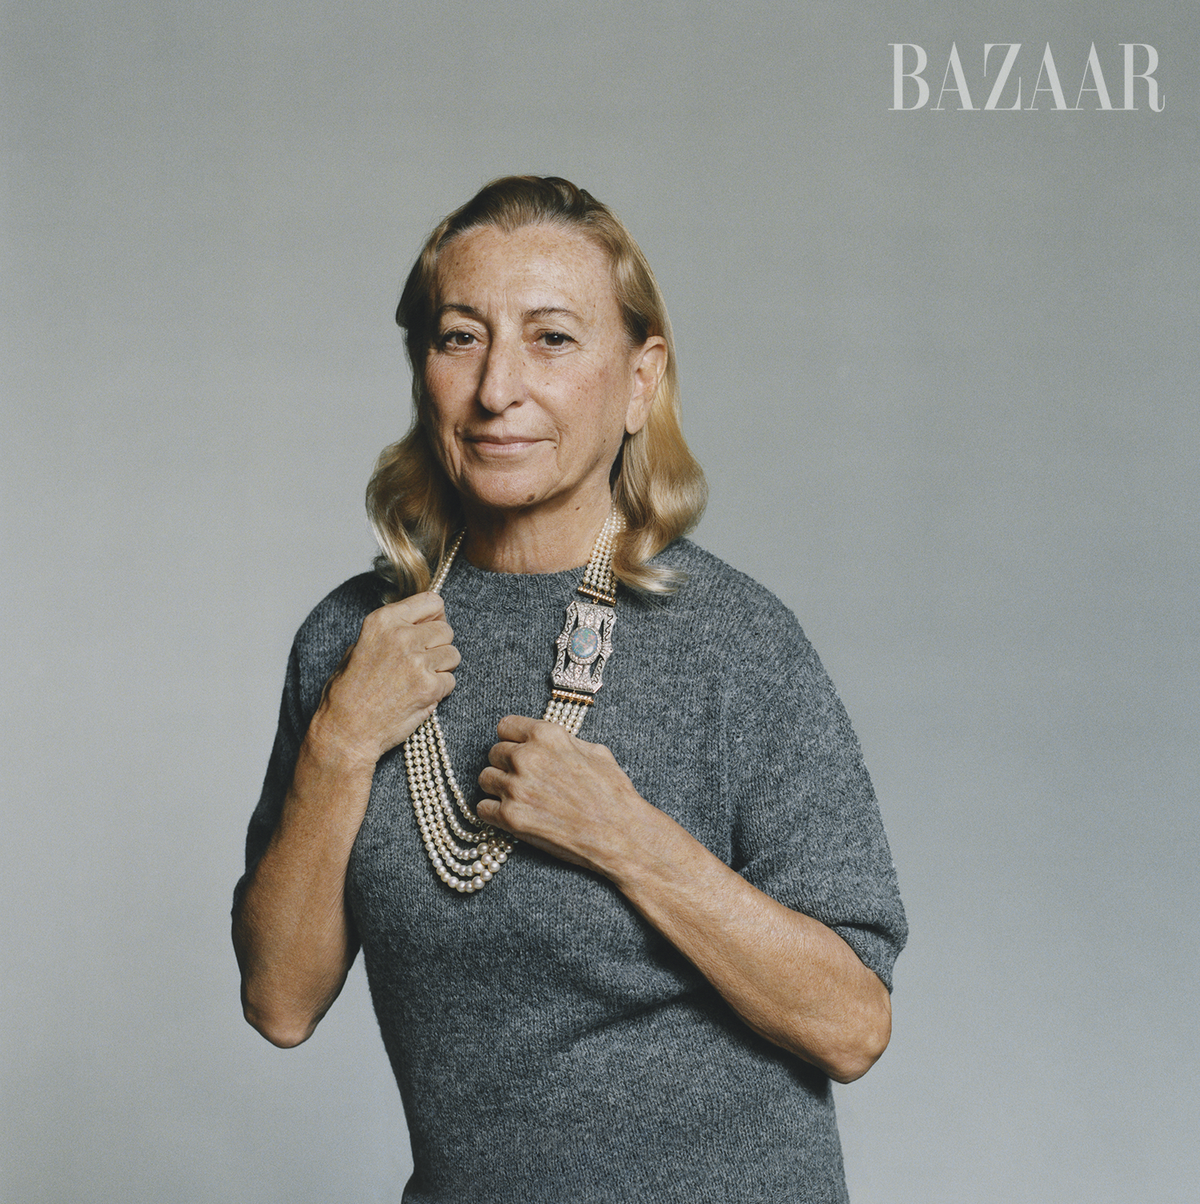 At Miu Miu, Miuccia Prada Asks What Beauty Means Today